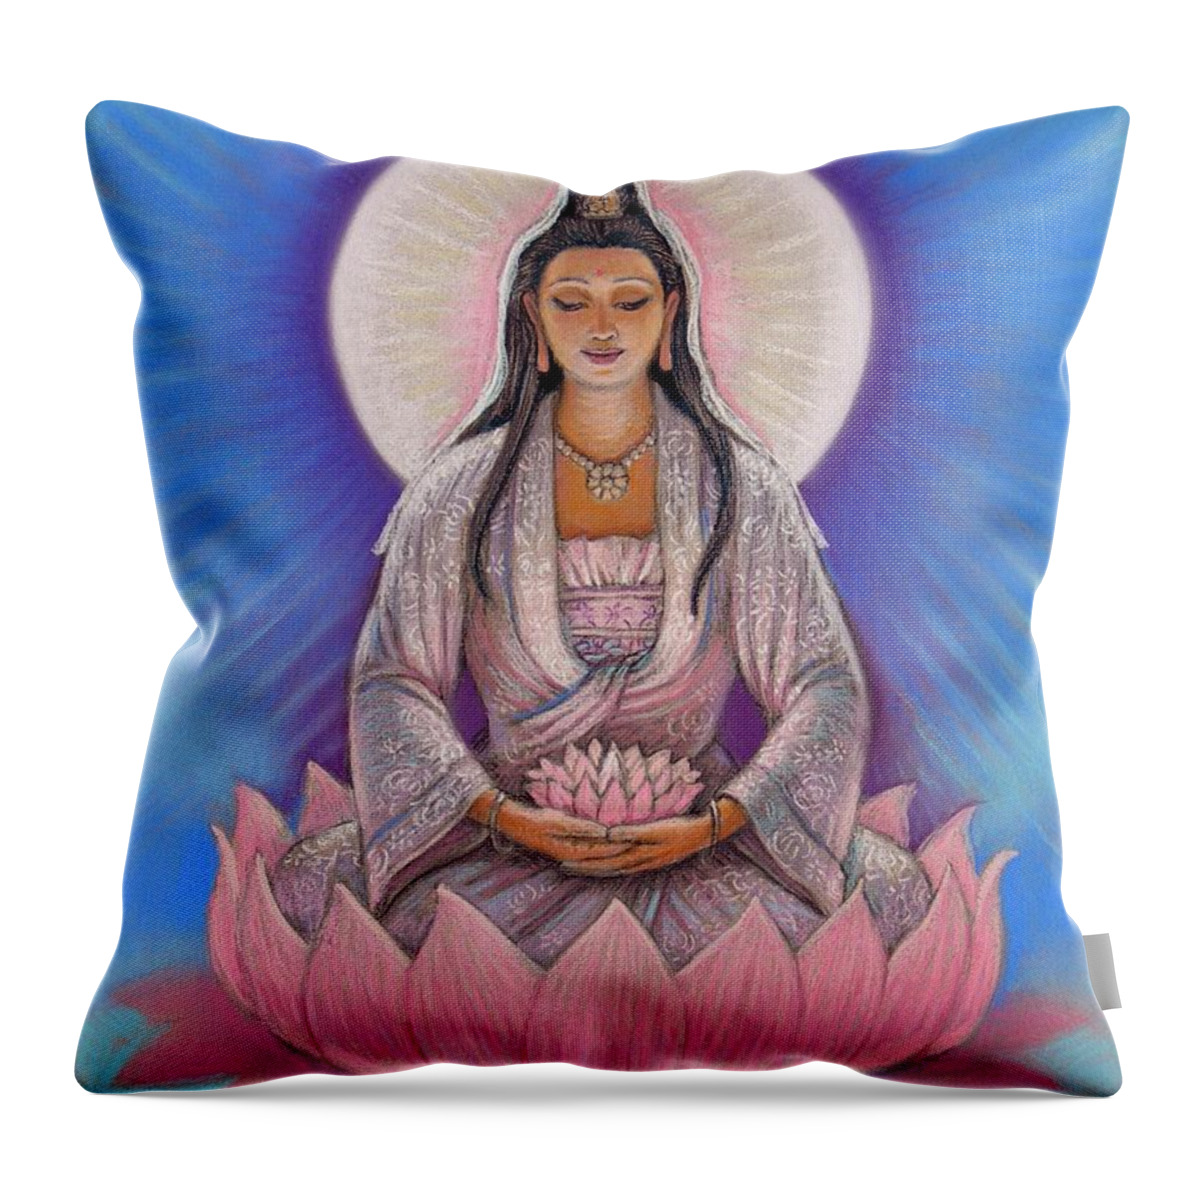 Kuan Yin Throw Pillow featuring the painting Kuan Yin by Sue Halstenberg